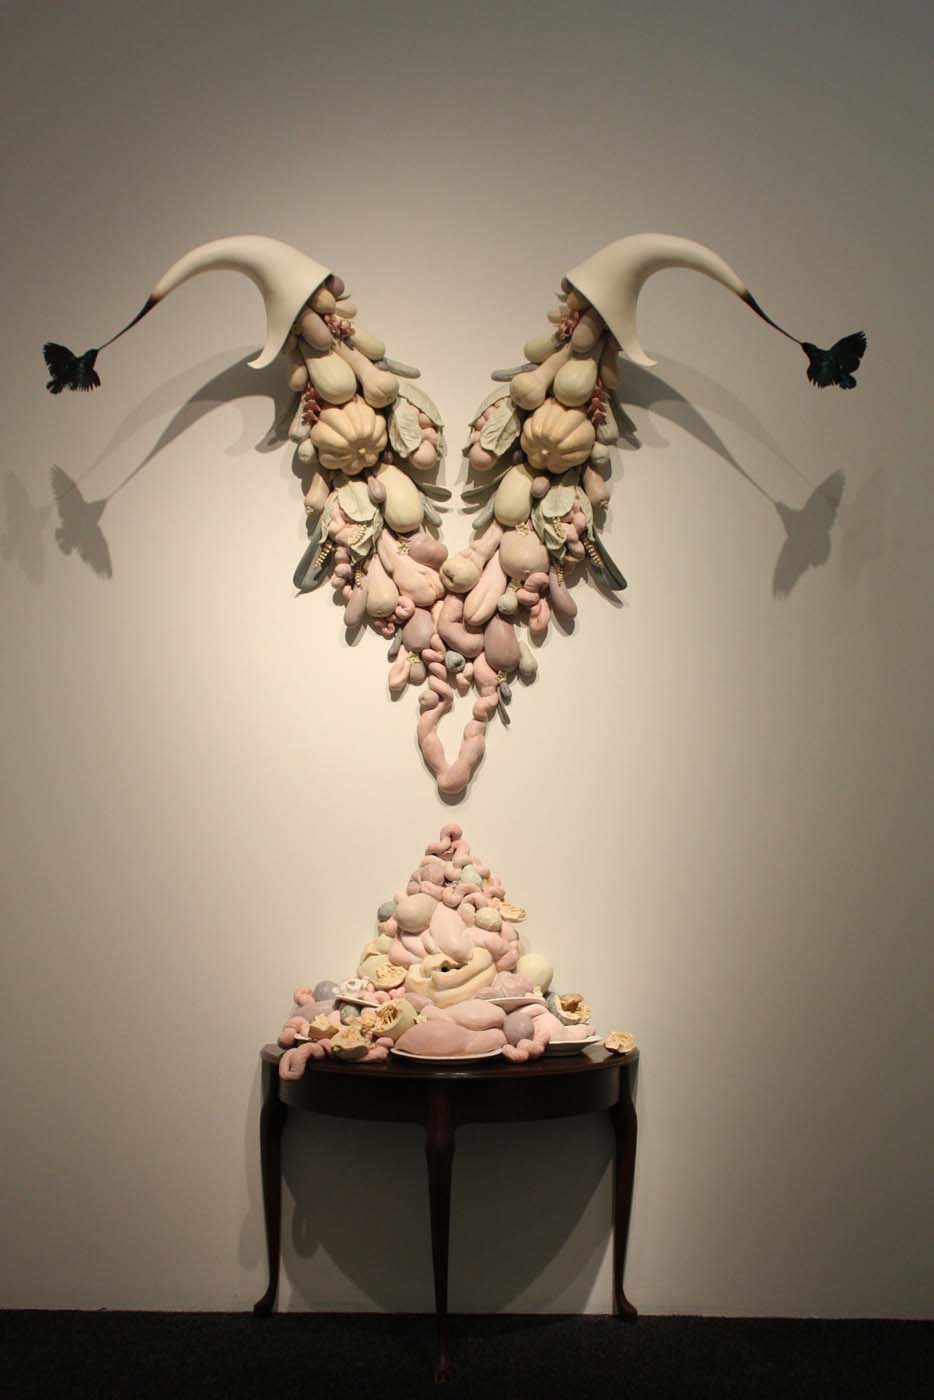 My Beautiful Nothing Vanitas Ceramic Bellevue Arts Museum cornucopia birds Sculpture by artist Dirk Staschke